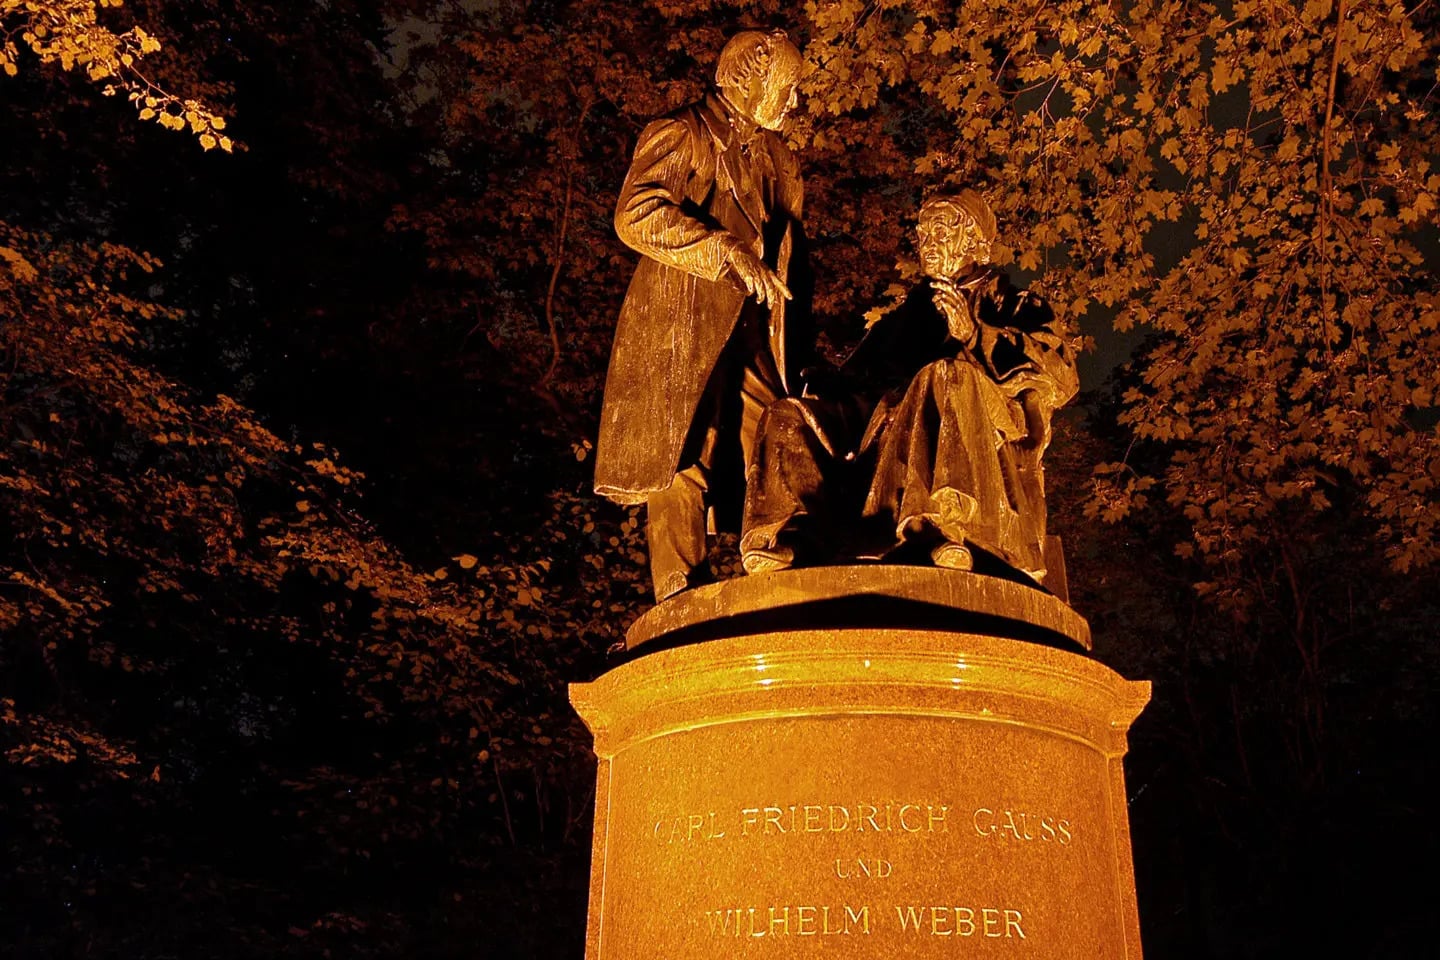 Friedrich Gauß und Wilhelm Weber sind auf dem Denkmal zu erkennen, das nächtlich illuminiert wurde.